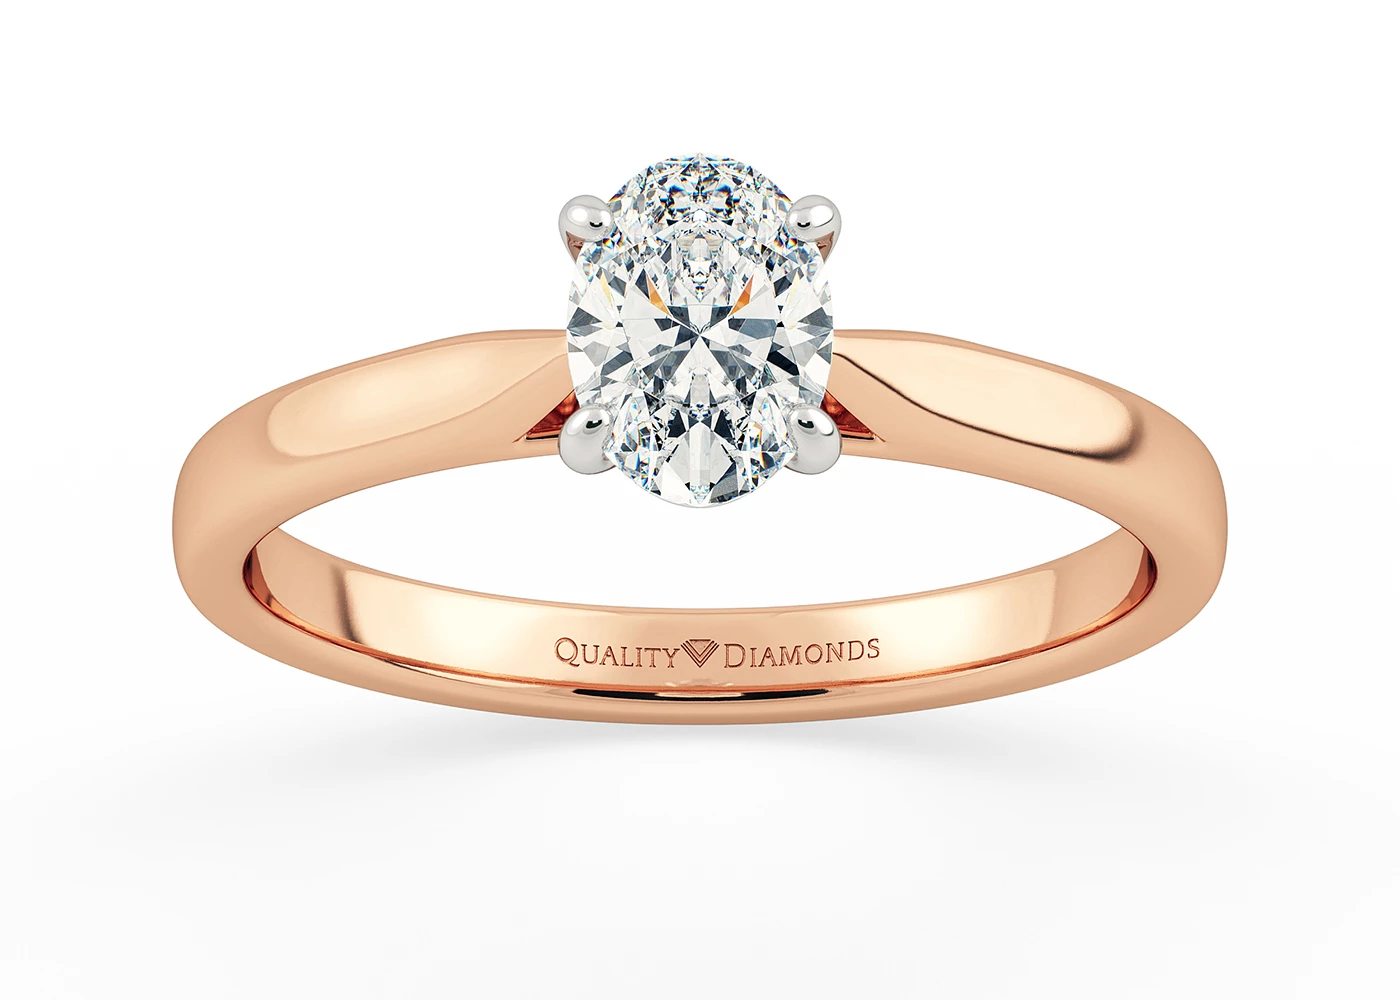 Oval Clara Diamond Ring in 9K Rose Gold